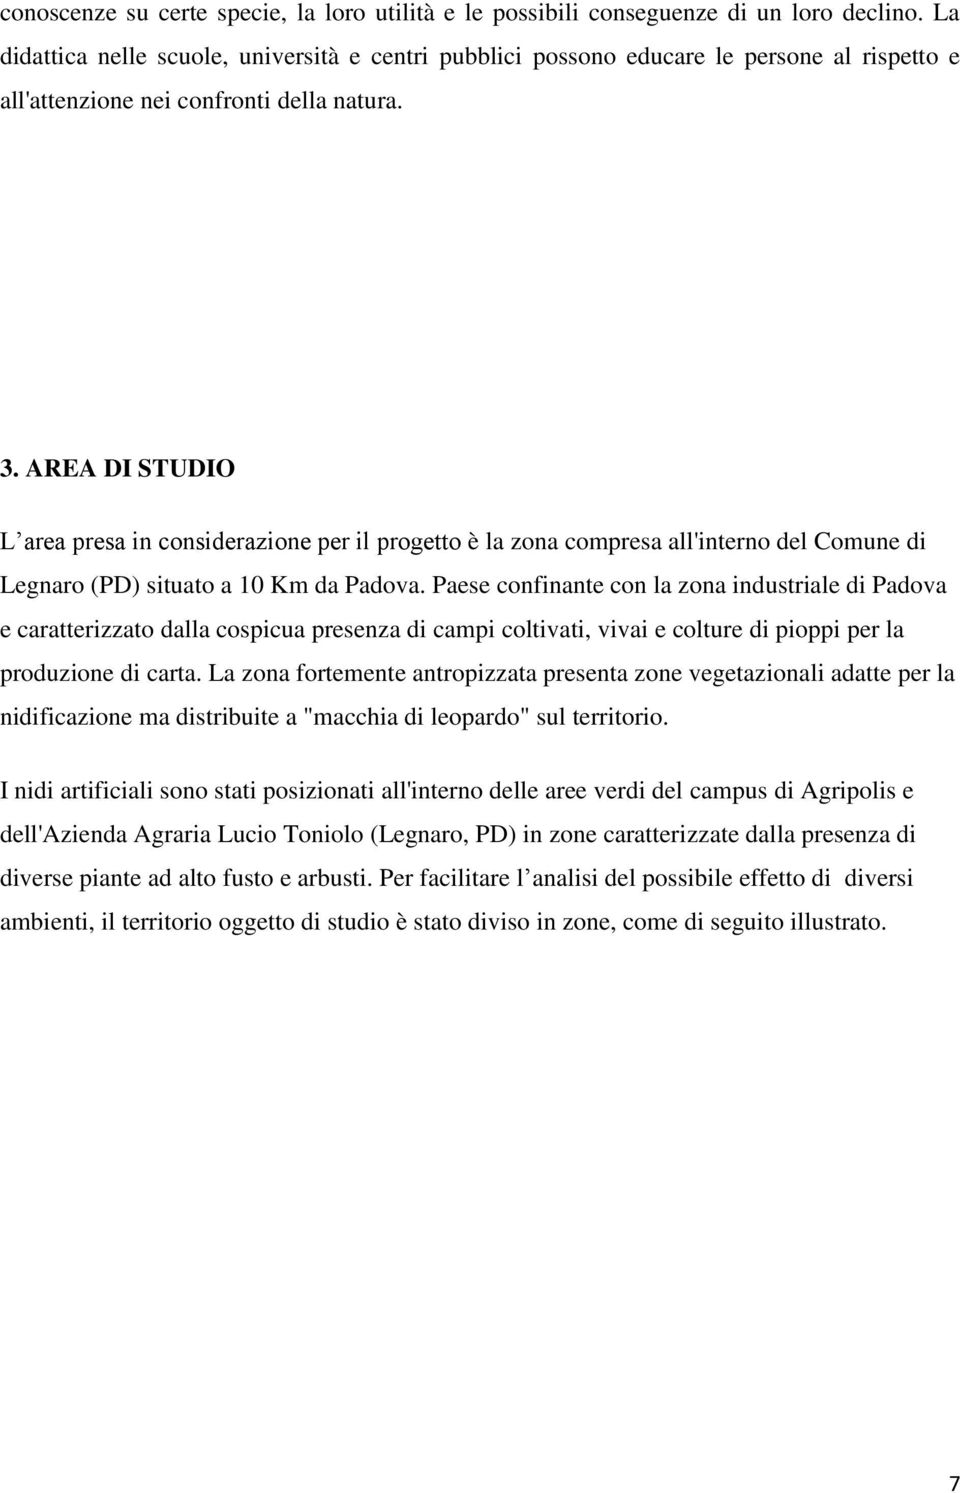 AREA DI STUDIO L area presa in considerazione per il progetto è la zona compresa all'interno del Comune di Legnaro (PD) situato a 10 Km da Padova.